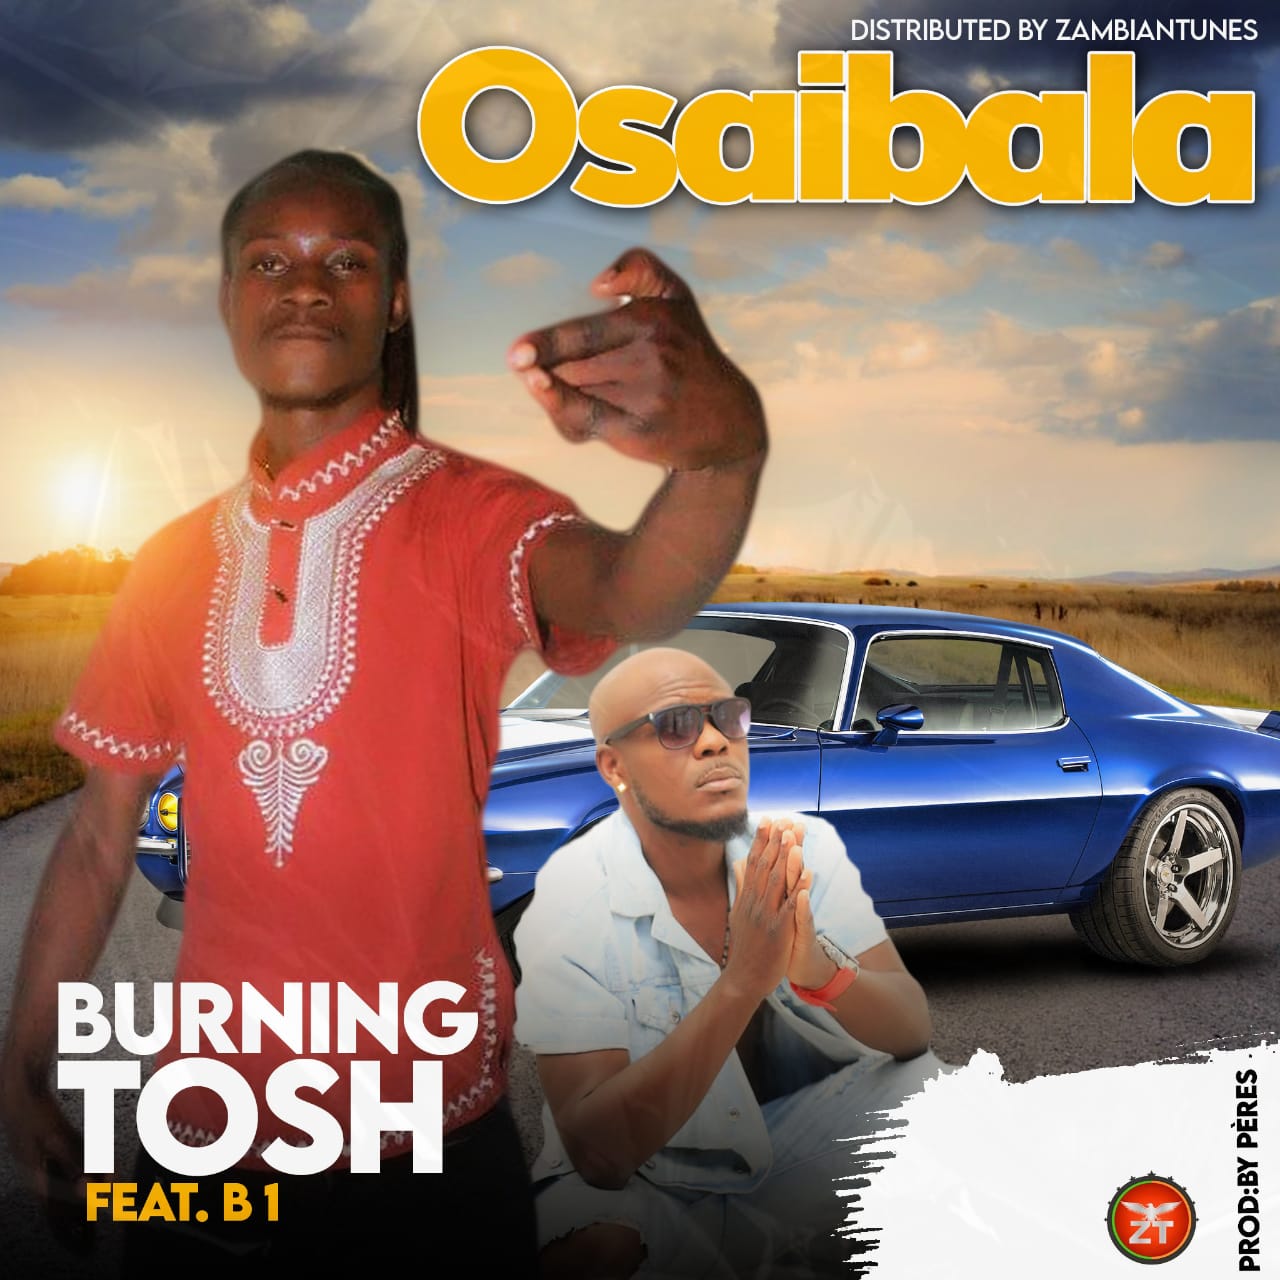 Burning Tosh ft. B1 - Osaibala